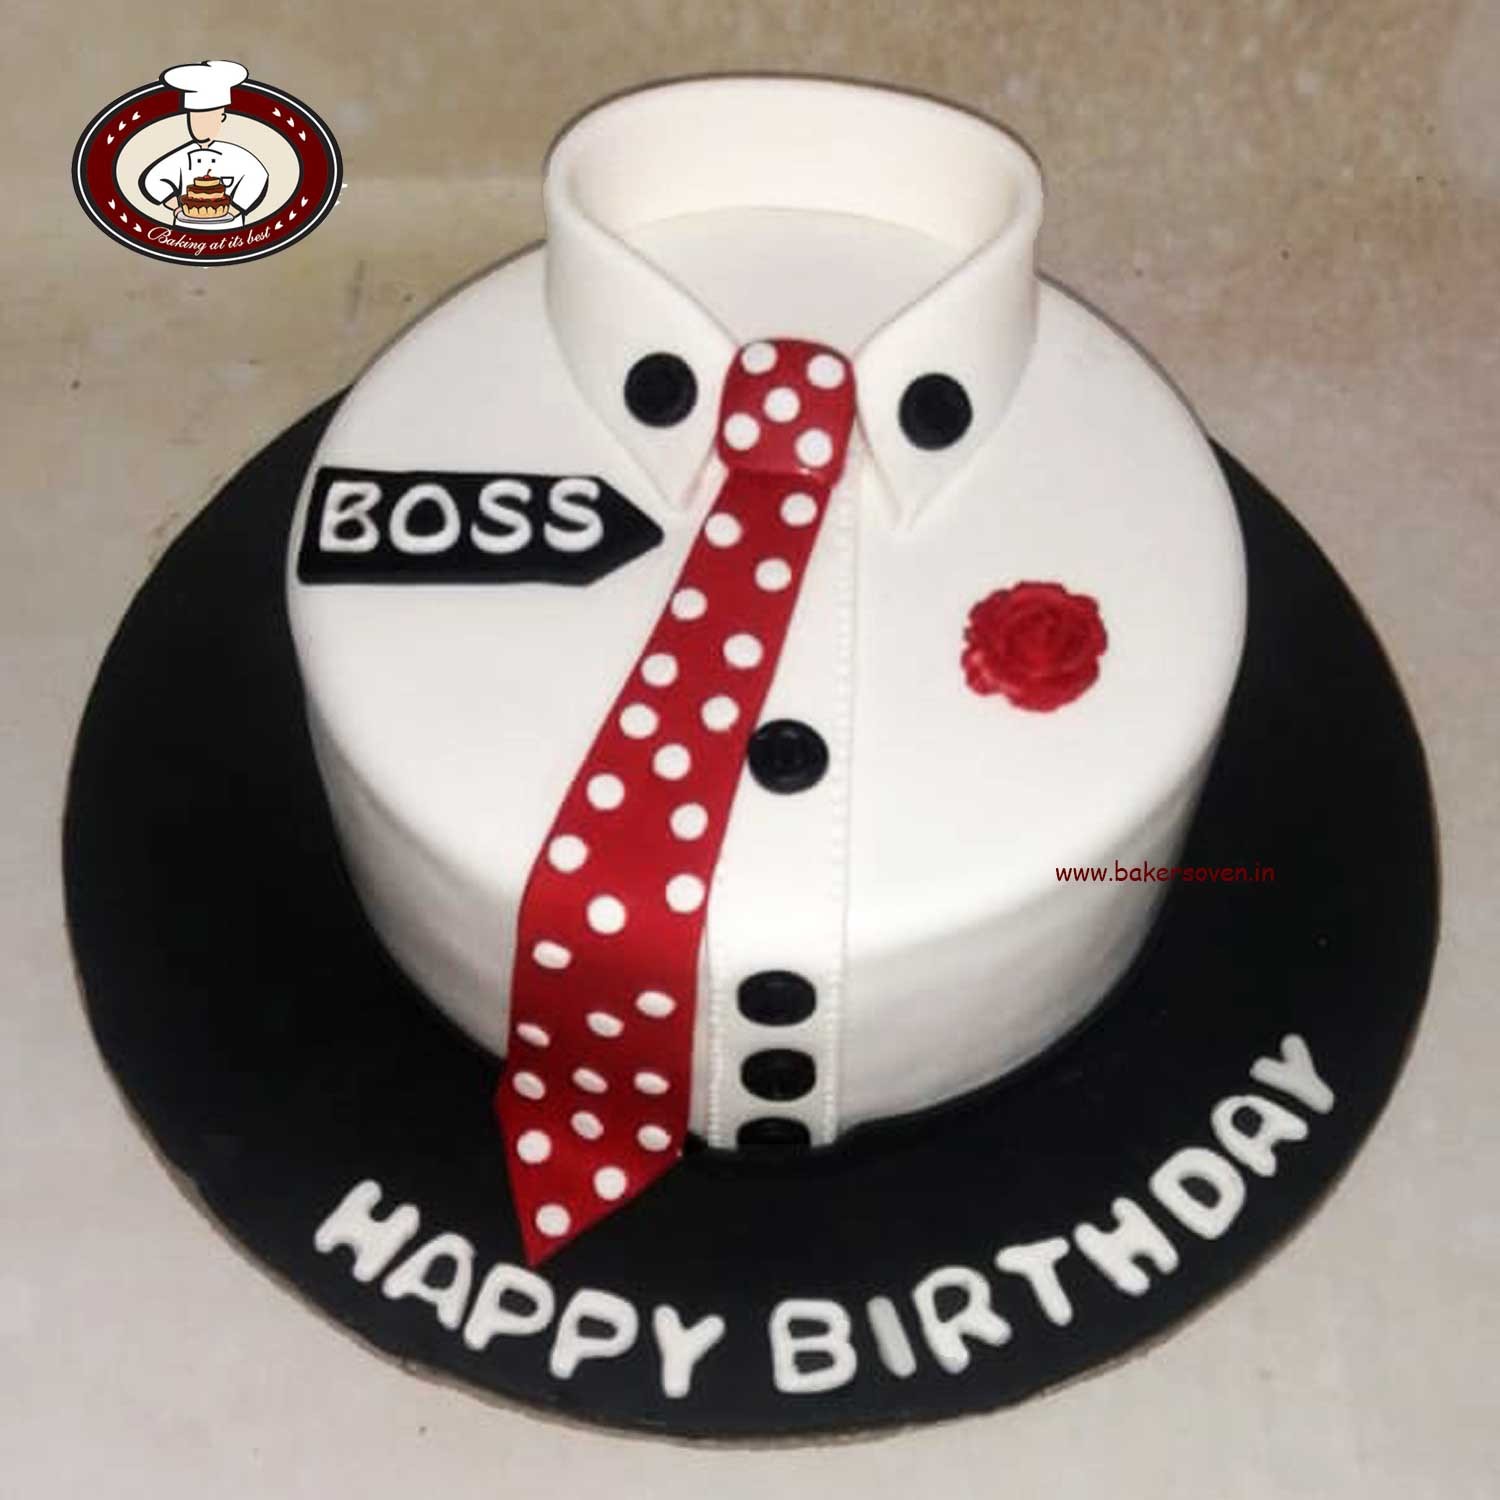 Best Boss Cake Topper Cake Topper for Boss Birthday Boss - Etsy Sweden